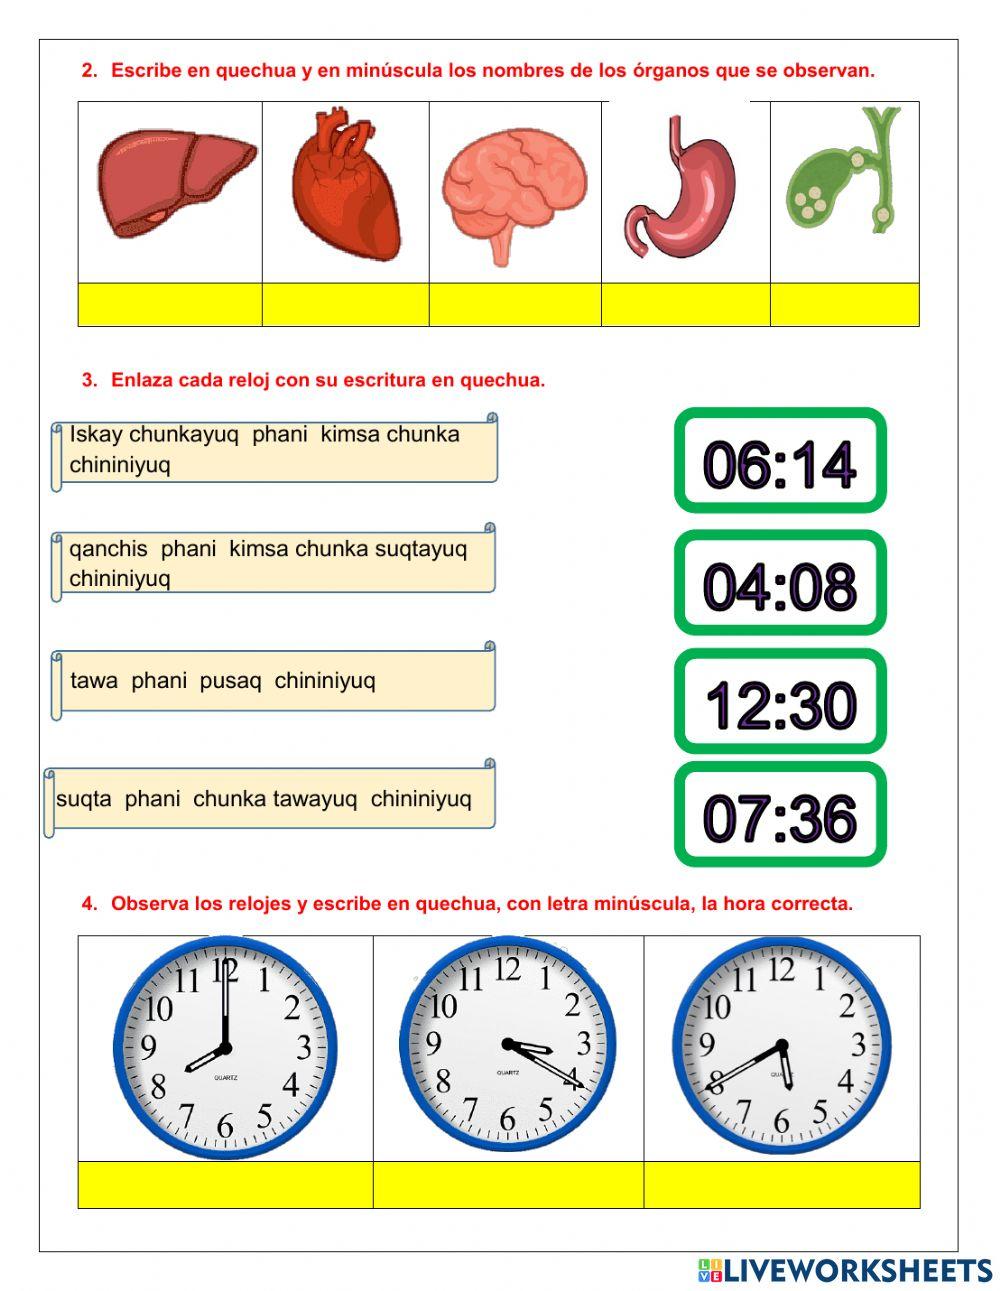 Evaluación órganos y la hora